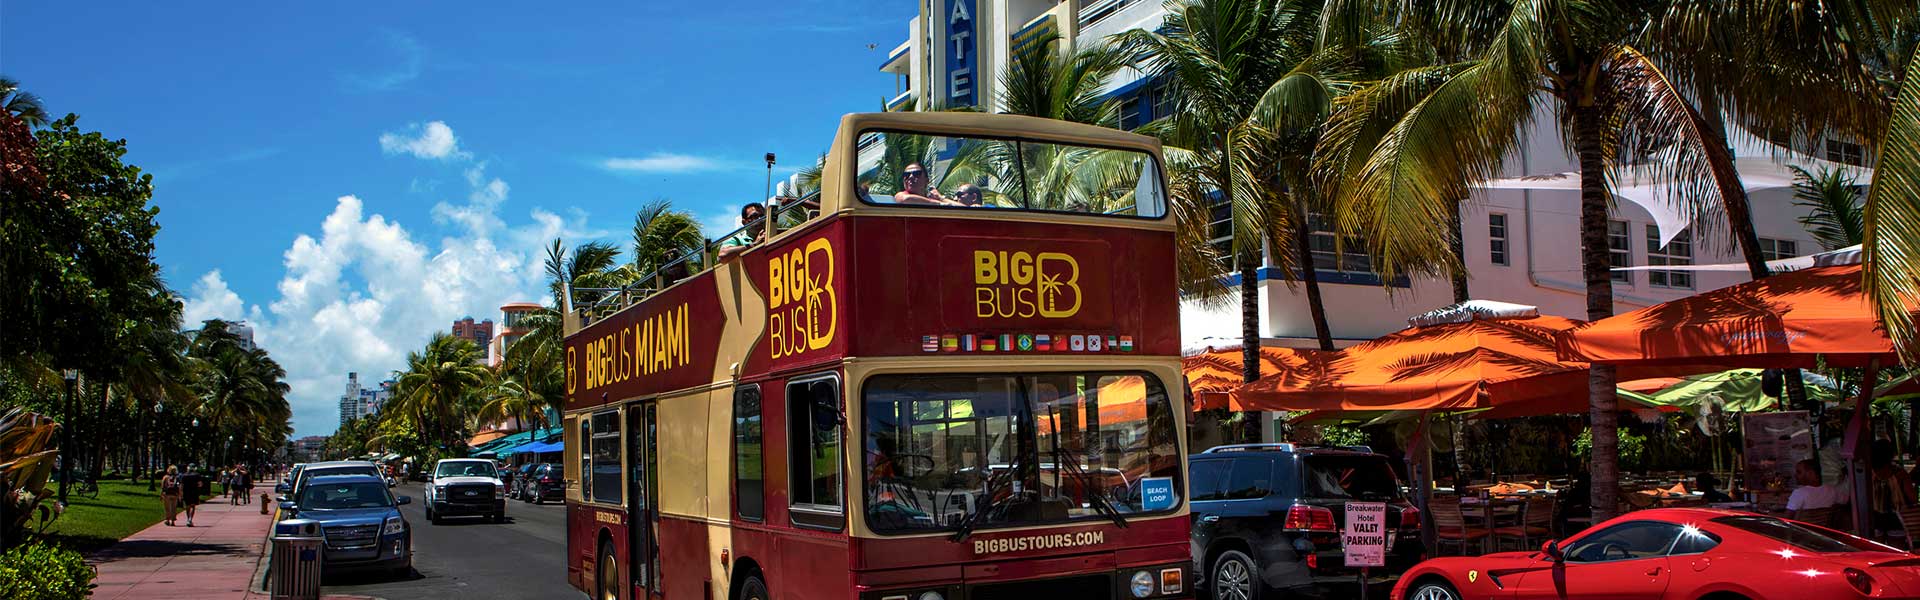 big bus city tours miami